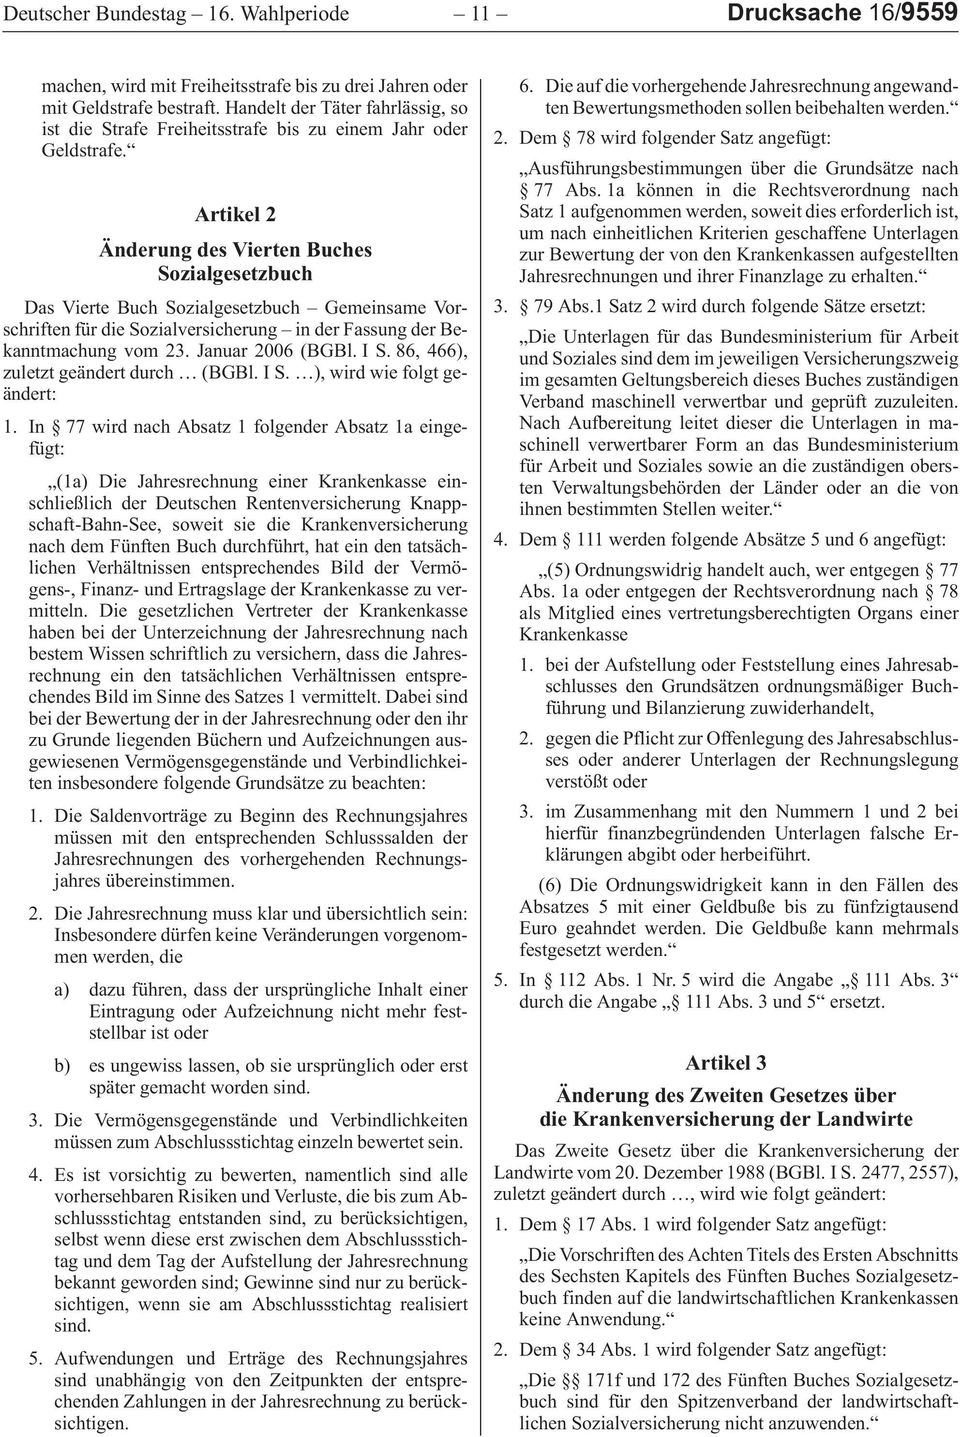 Artikel 2 Änderung des Vierten Buches Sozialgesetzbuch DasVierteBuchSozialgesetzbuch GemeinsameVorschriftenfürdieSozialversicherung inderfassungderbekanntmachungvom23.januar2006 (BGBl.IS.